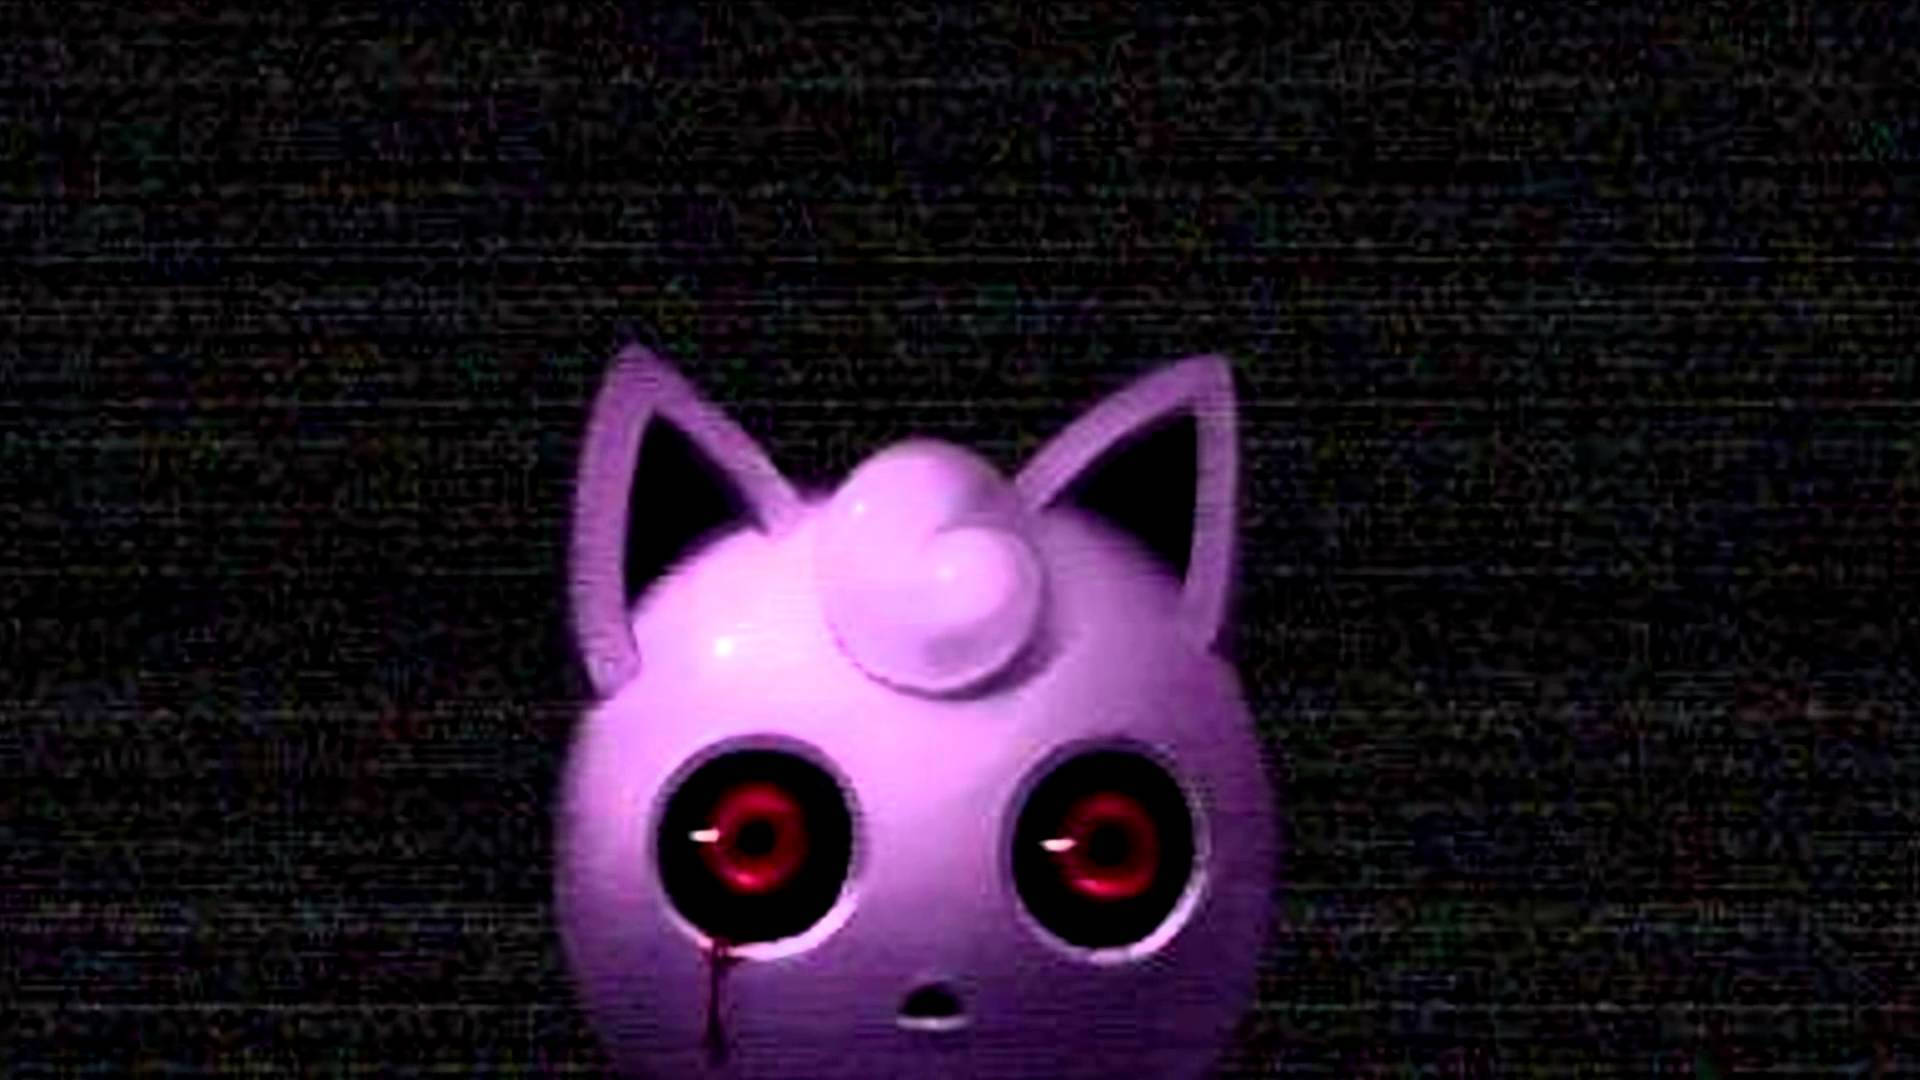 Image Bloodshot Eyes Of Jigglypuff